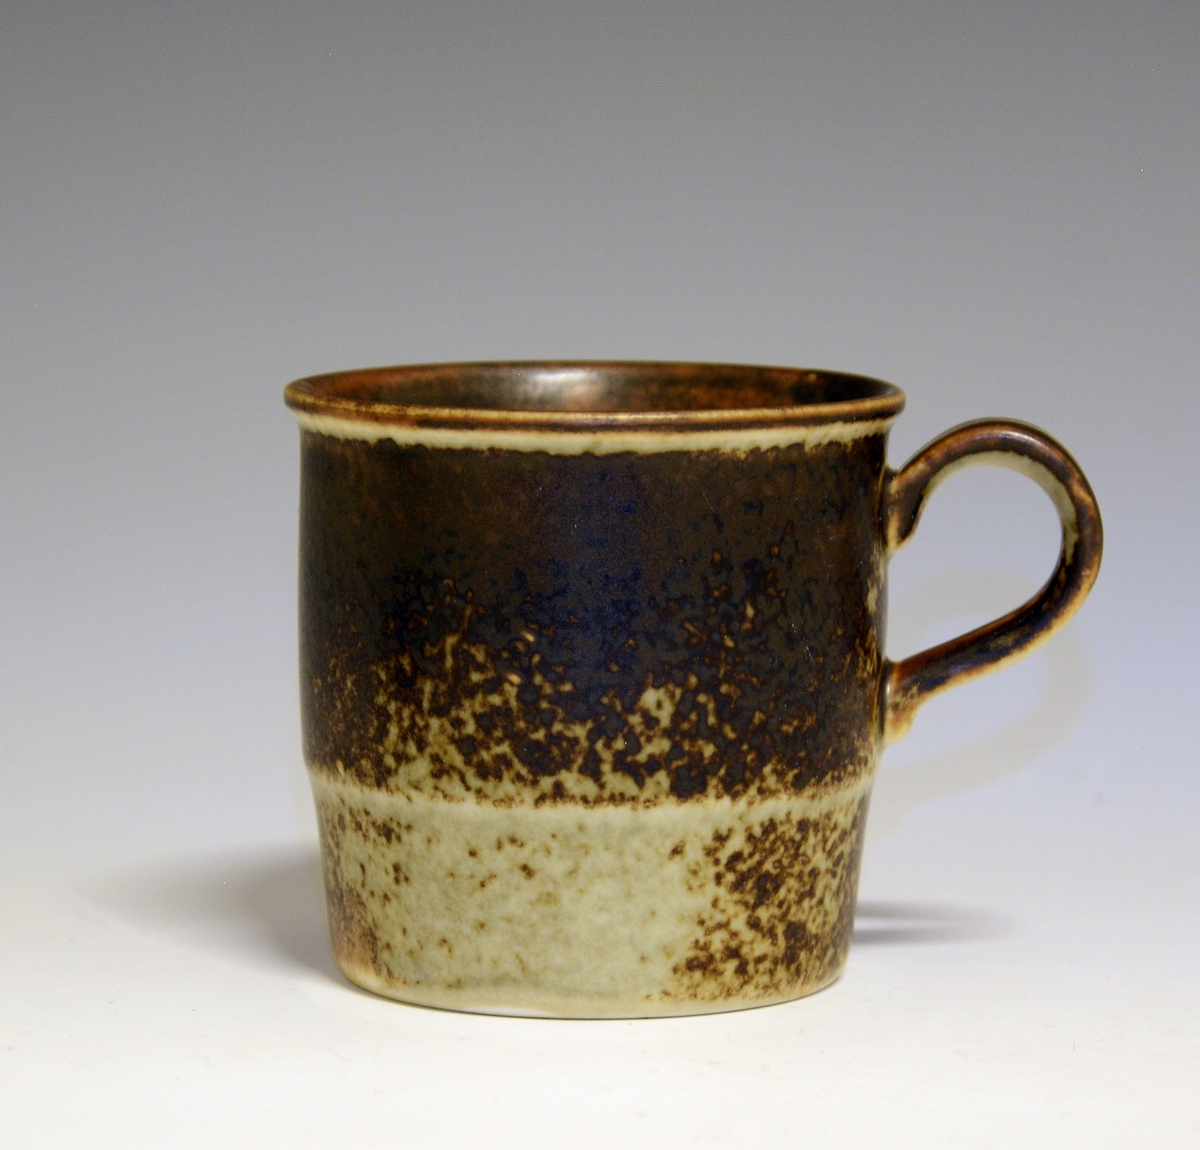 Prot: Kopp (Kaffekopp) av porselen, "Lava". Lansert 1972 av Porsgrunds Porselænsfabrik. 
Modell: 2440, Eystein.
Dekor: 88258, Lava.